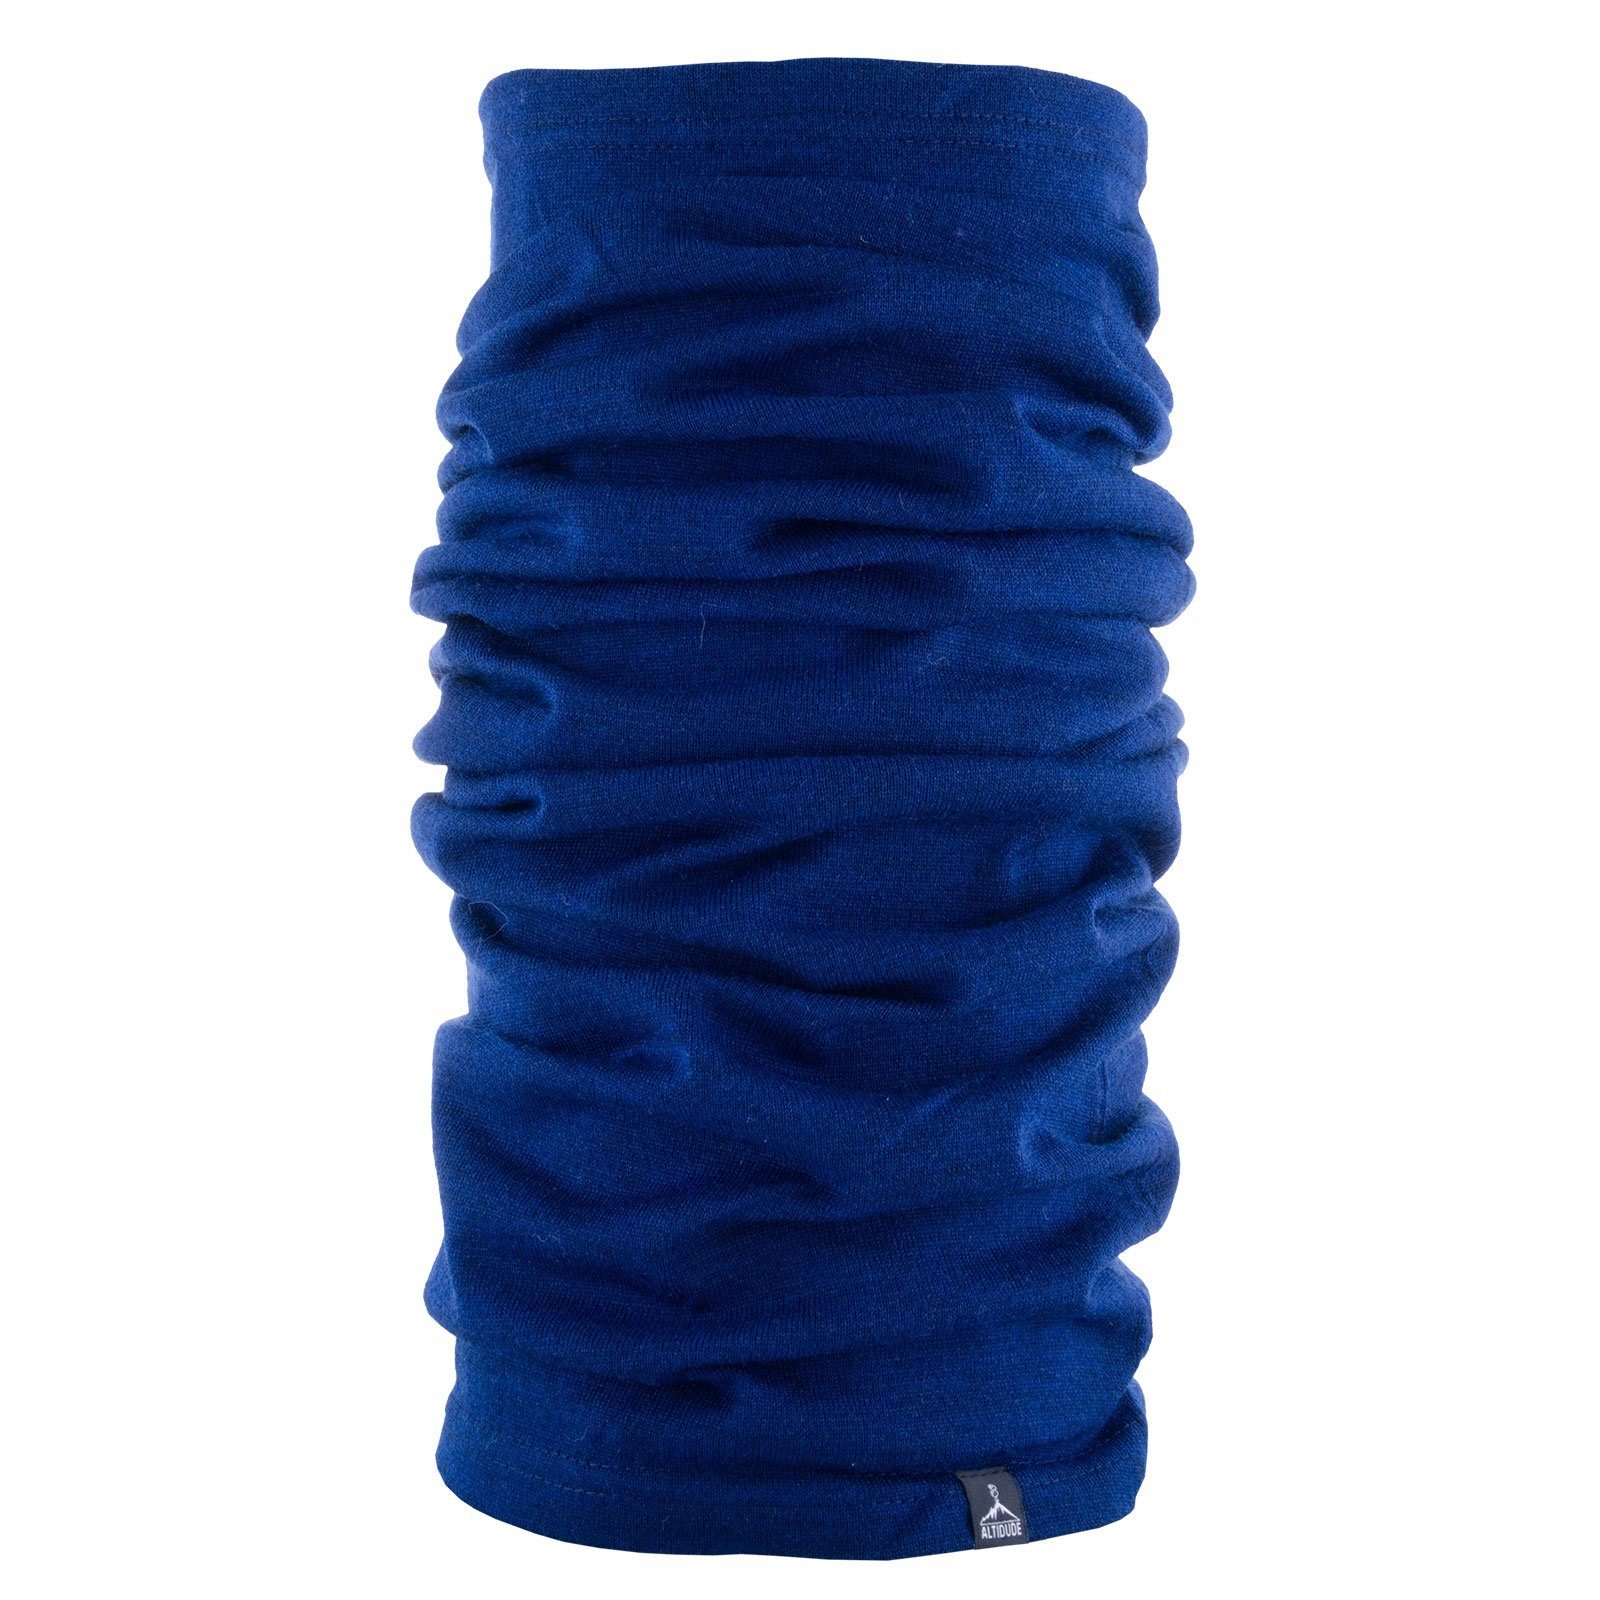 ALTIDUDE Wollschal Multitube Single Schlauchtuch Halstuch, Rund Loop Schal 100% Merinowolle Blau